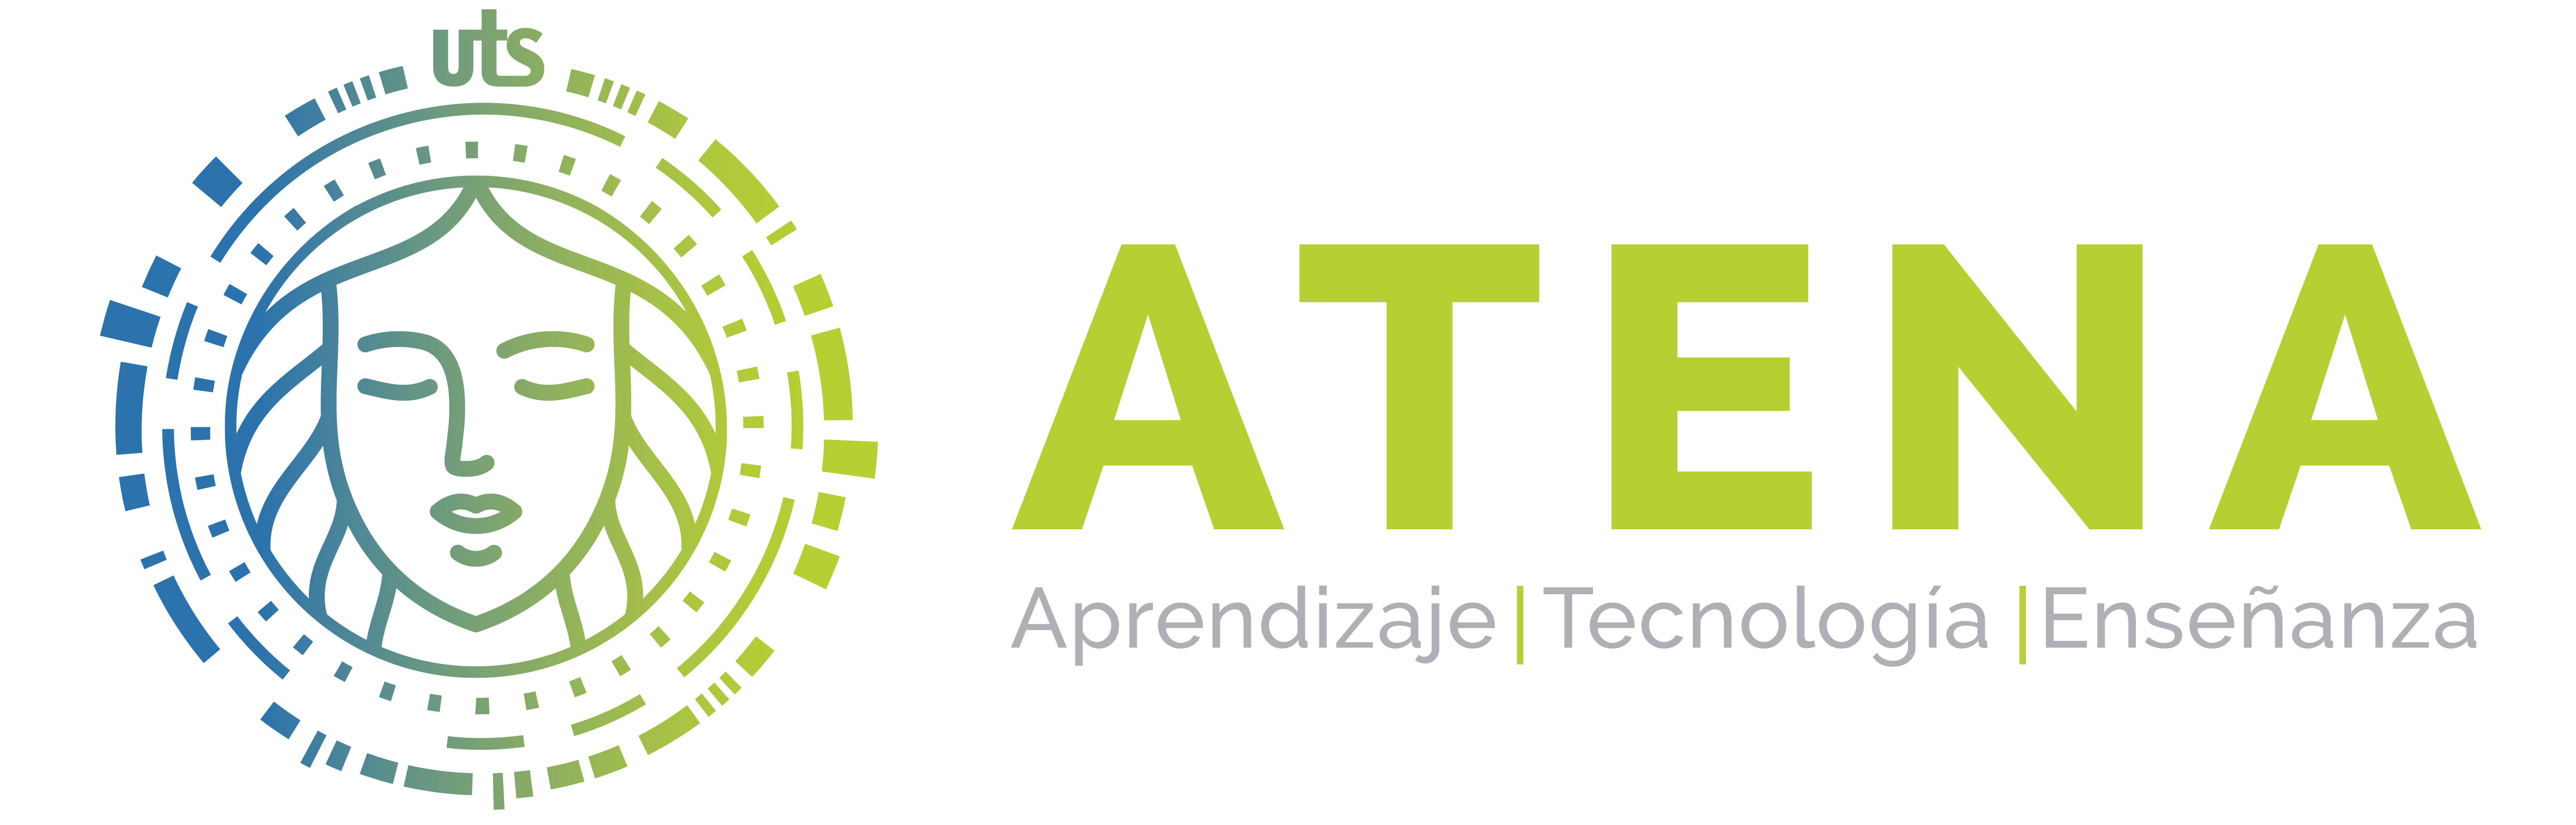 ATENA - Aprendizaje Tecnología Enseñanza